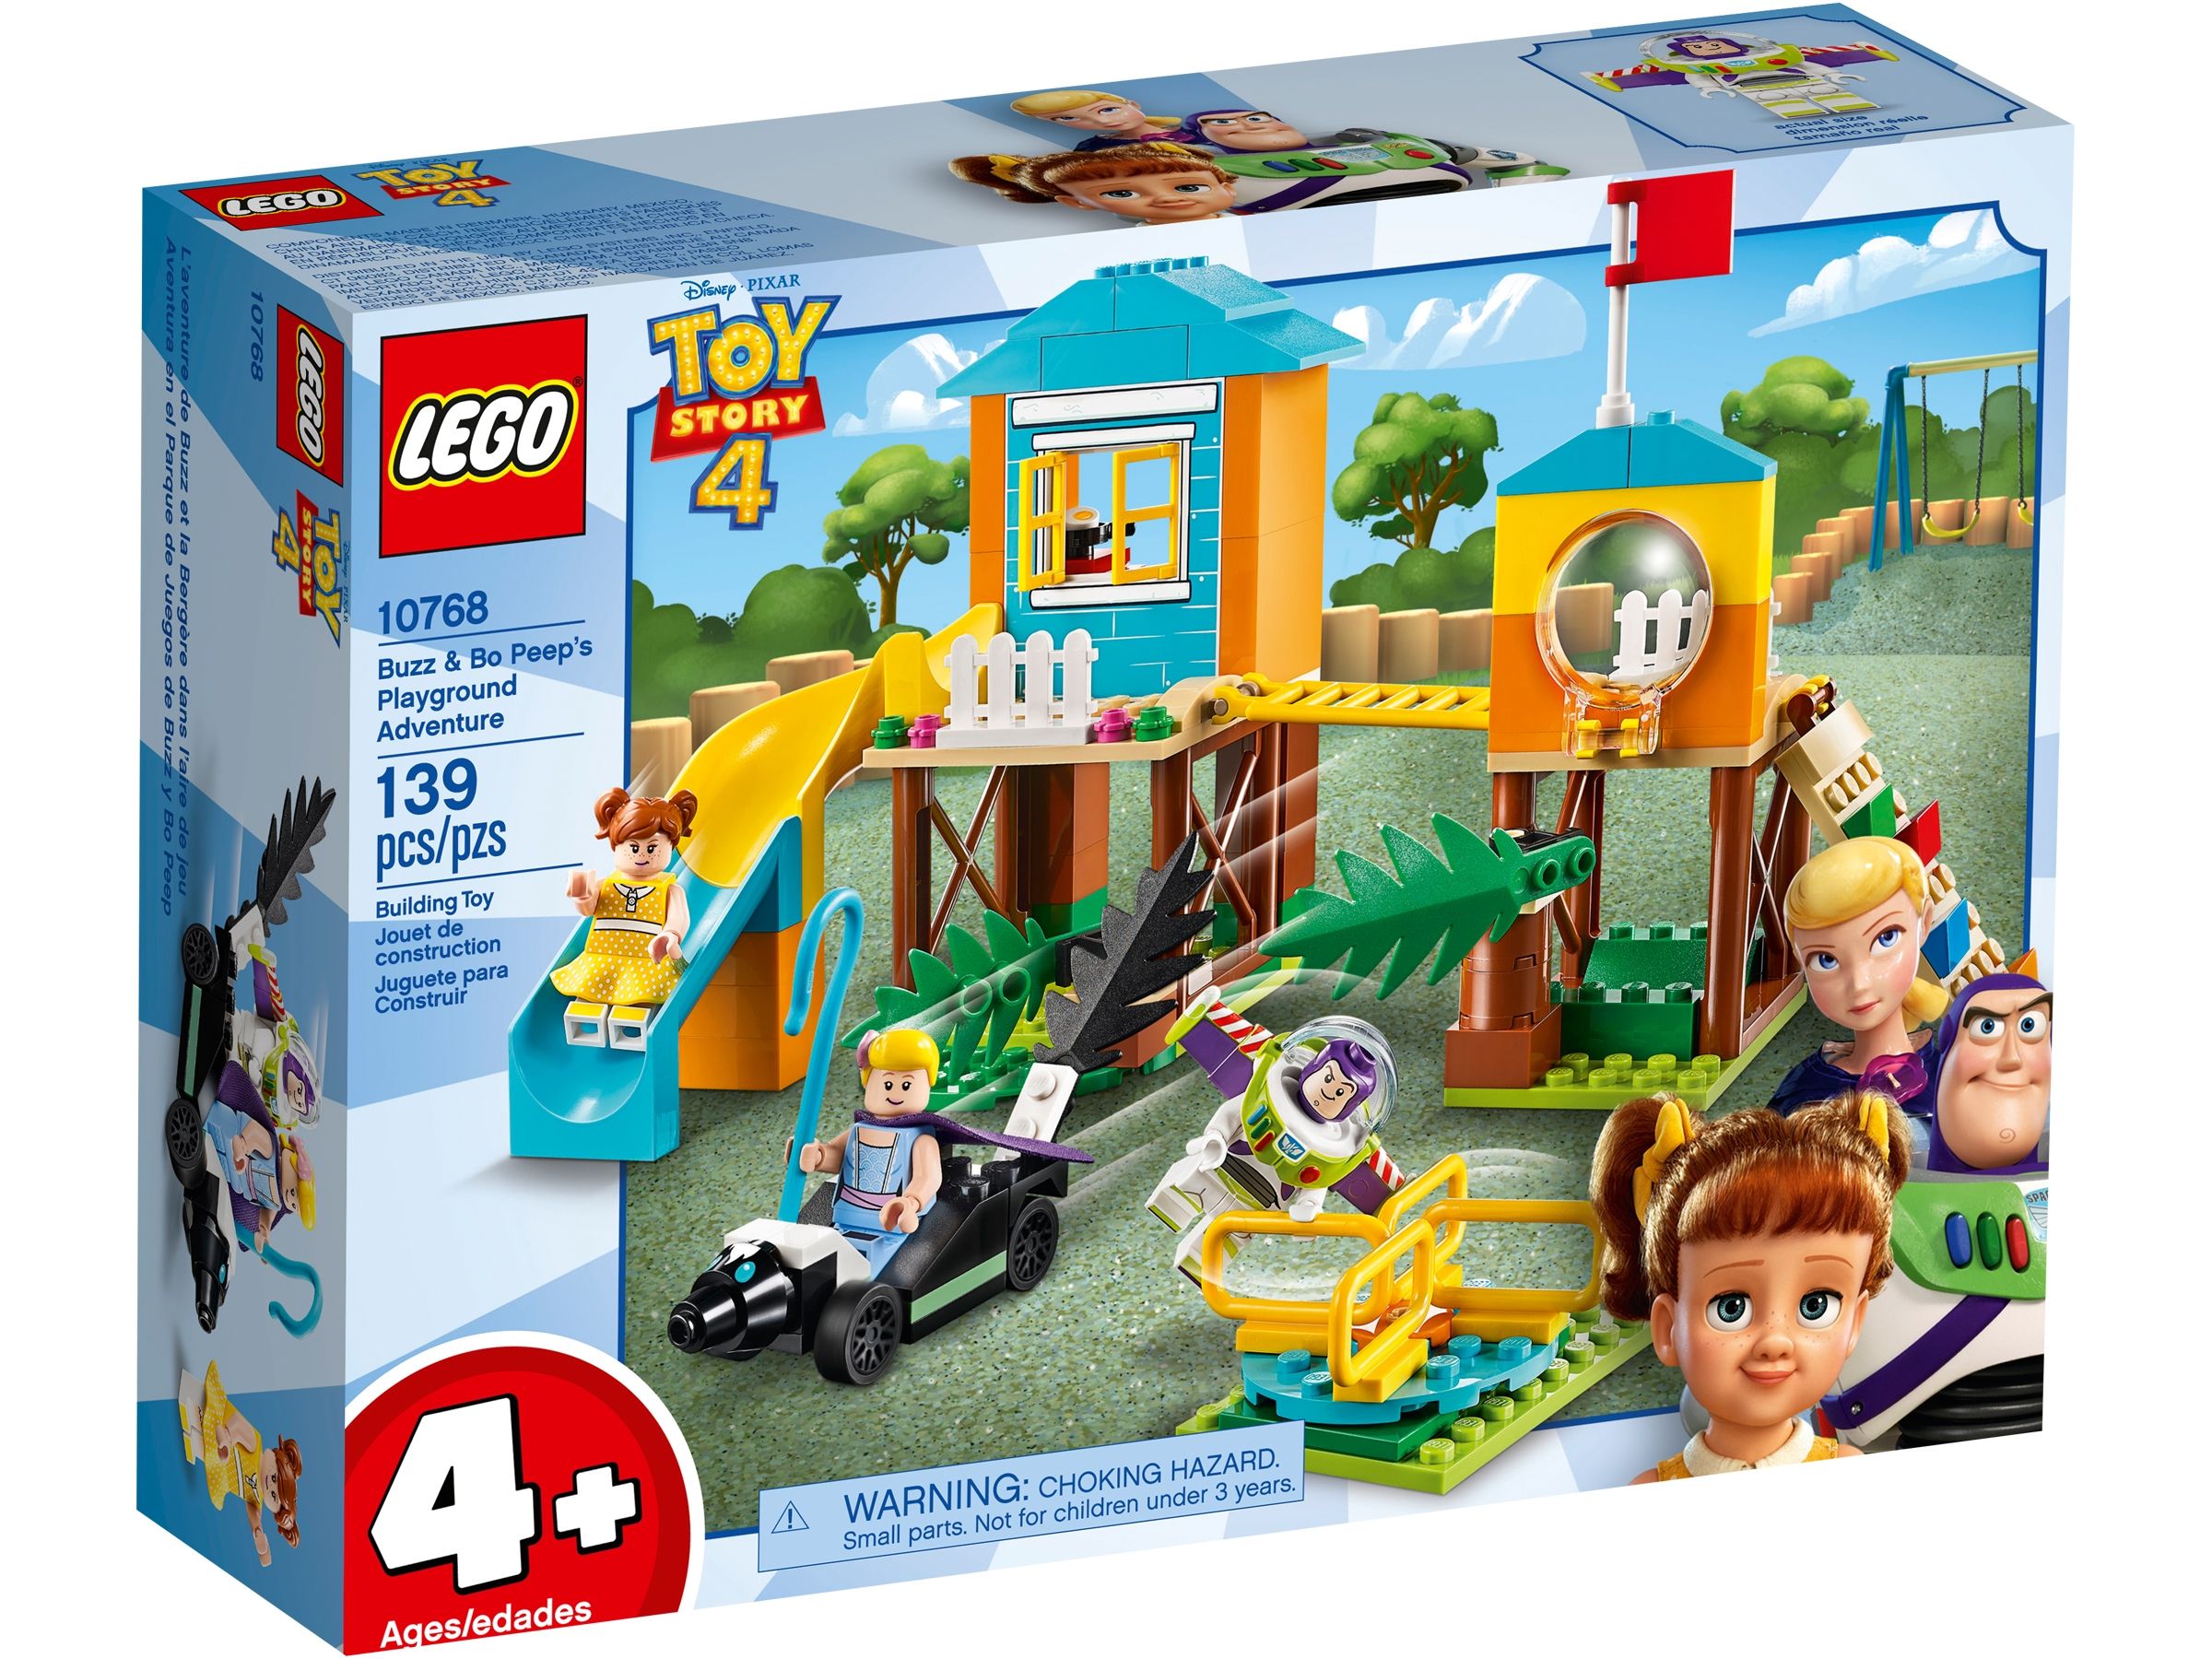 LEGO Toy Story 10768 Buzz & Porzellinchens Spielplatzabenteuer LEGO_10768_Box1_v39.jpg